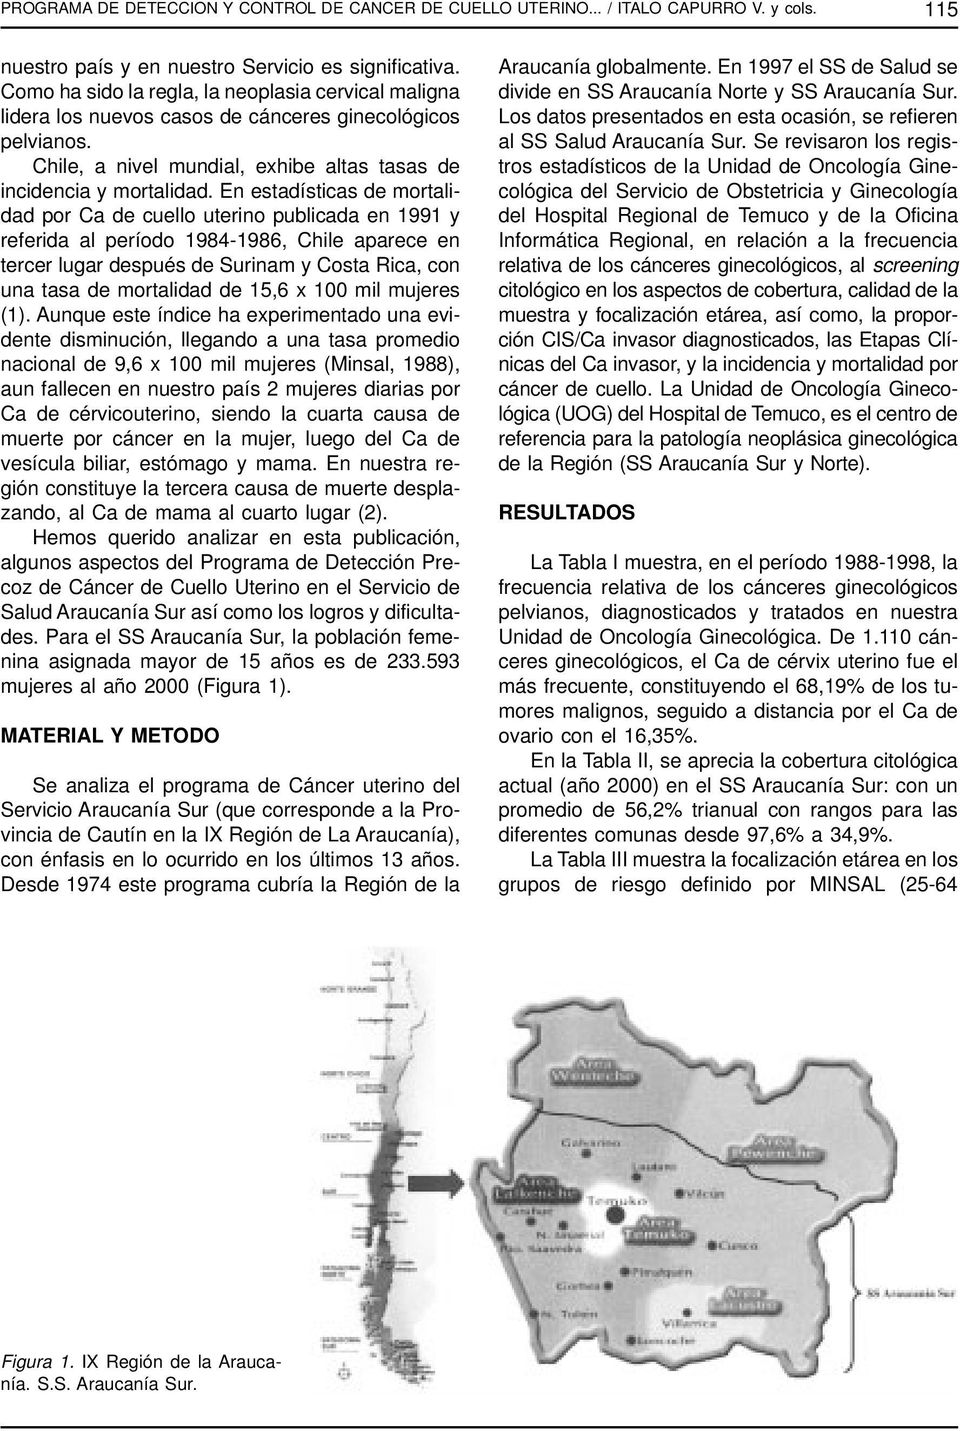 En estadísticas de mortalidad por Ca de cuello uterino publicada en 1991 y referida al período 1984-1986, Chile aparece en tercer lugar después de Surinam y Costa Rica, con una tasa de mortalidad de